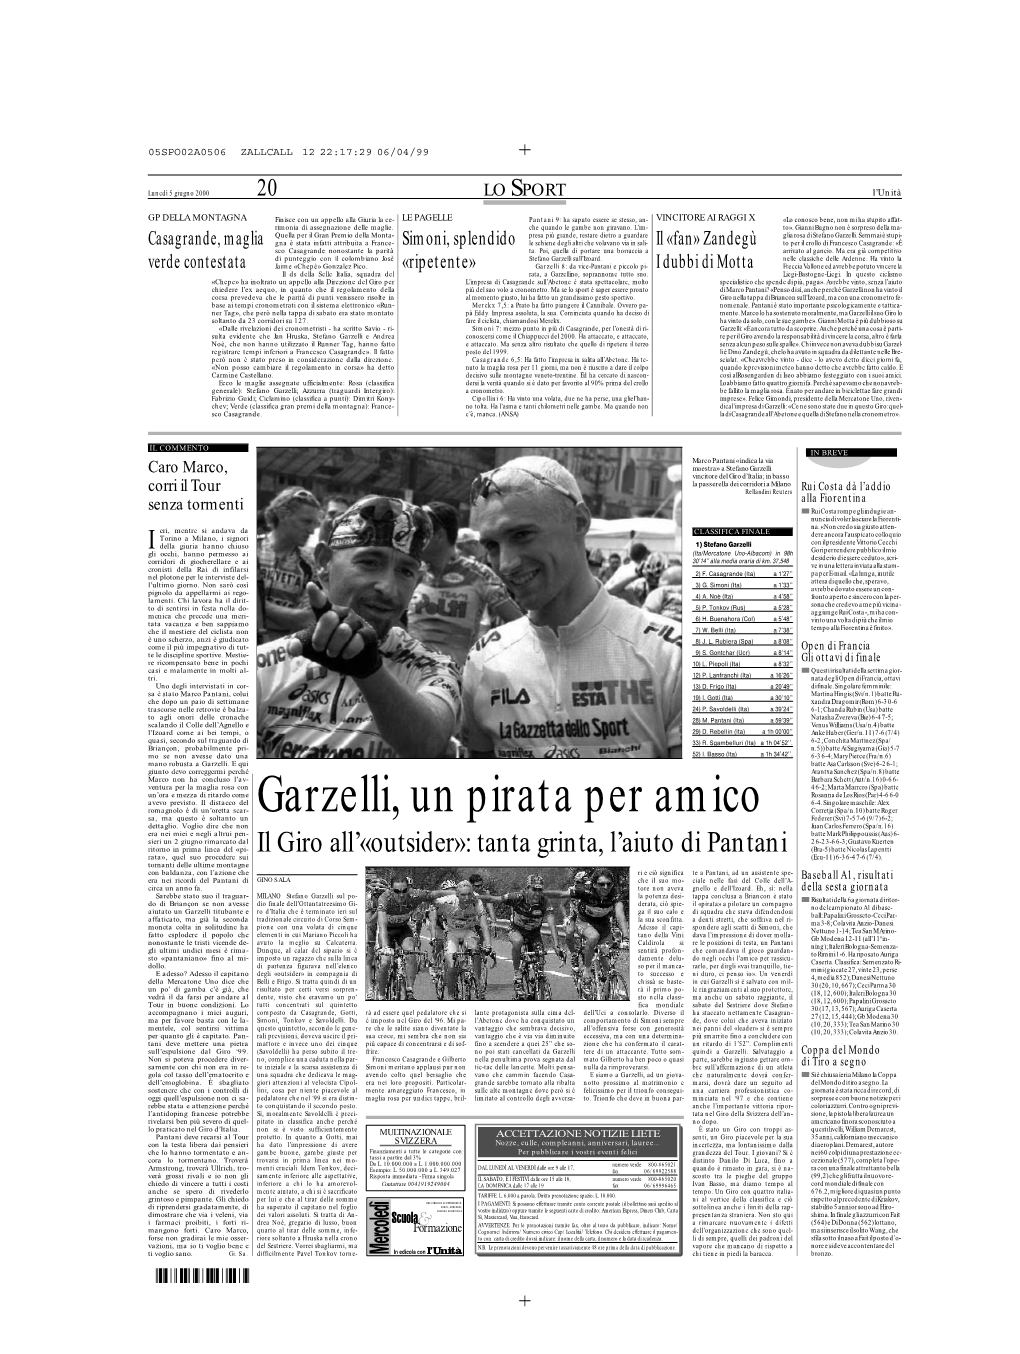 Garzelli, Un Pirata Per Amico Federer(Svi)7-57-6(9/7)6-2; Dettaglio